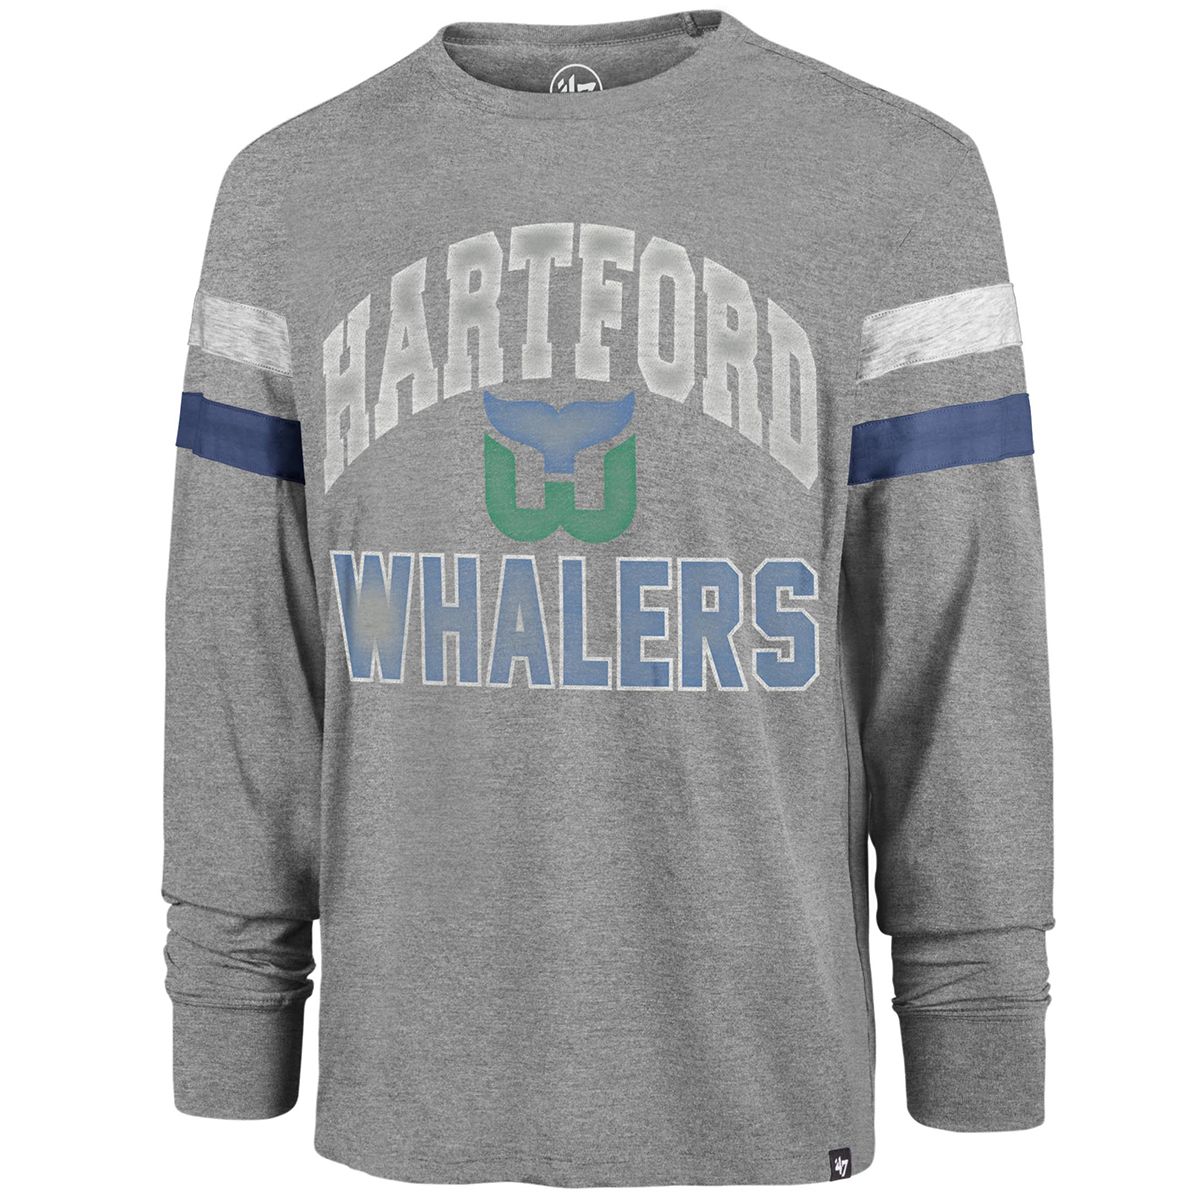  '47 Hartford Whalers Vintage NHL Fan T-Shirt - Large